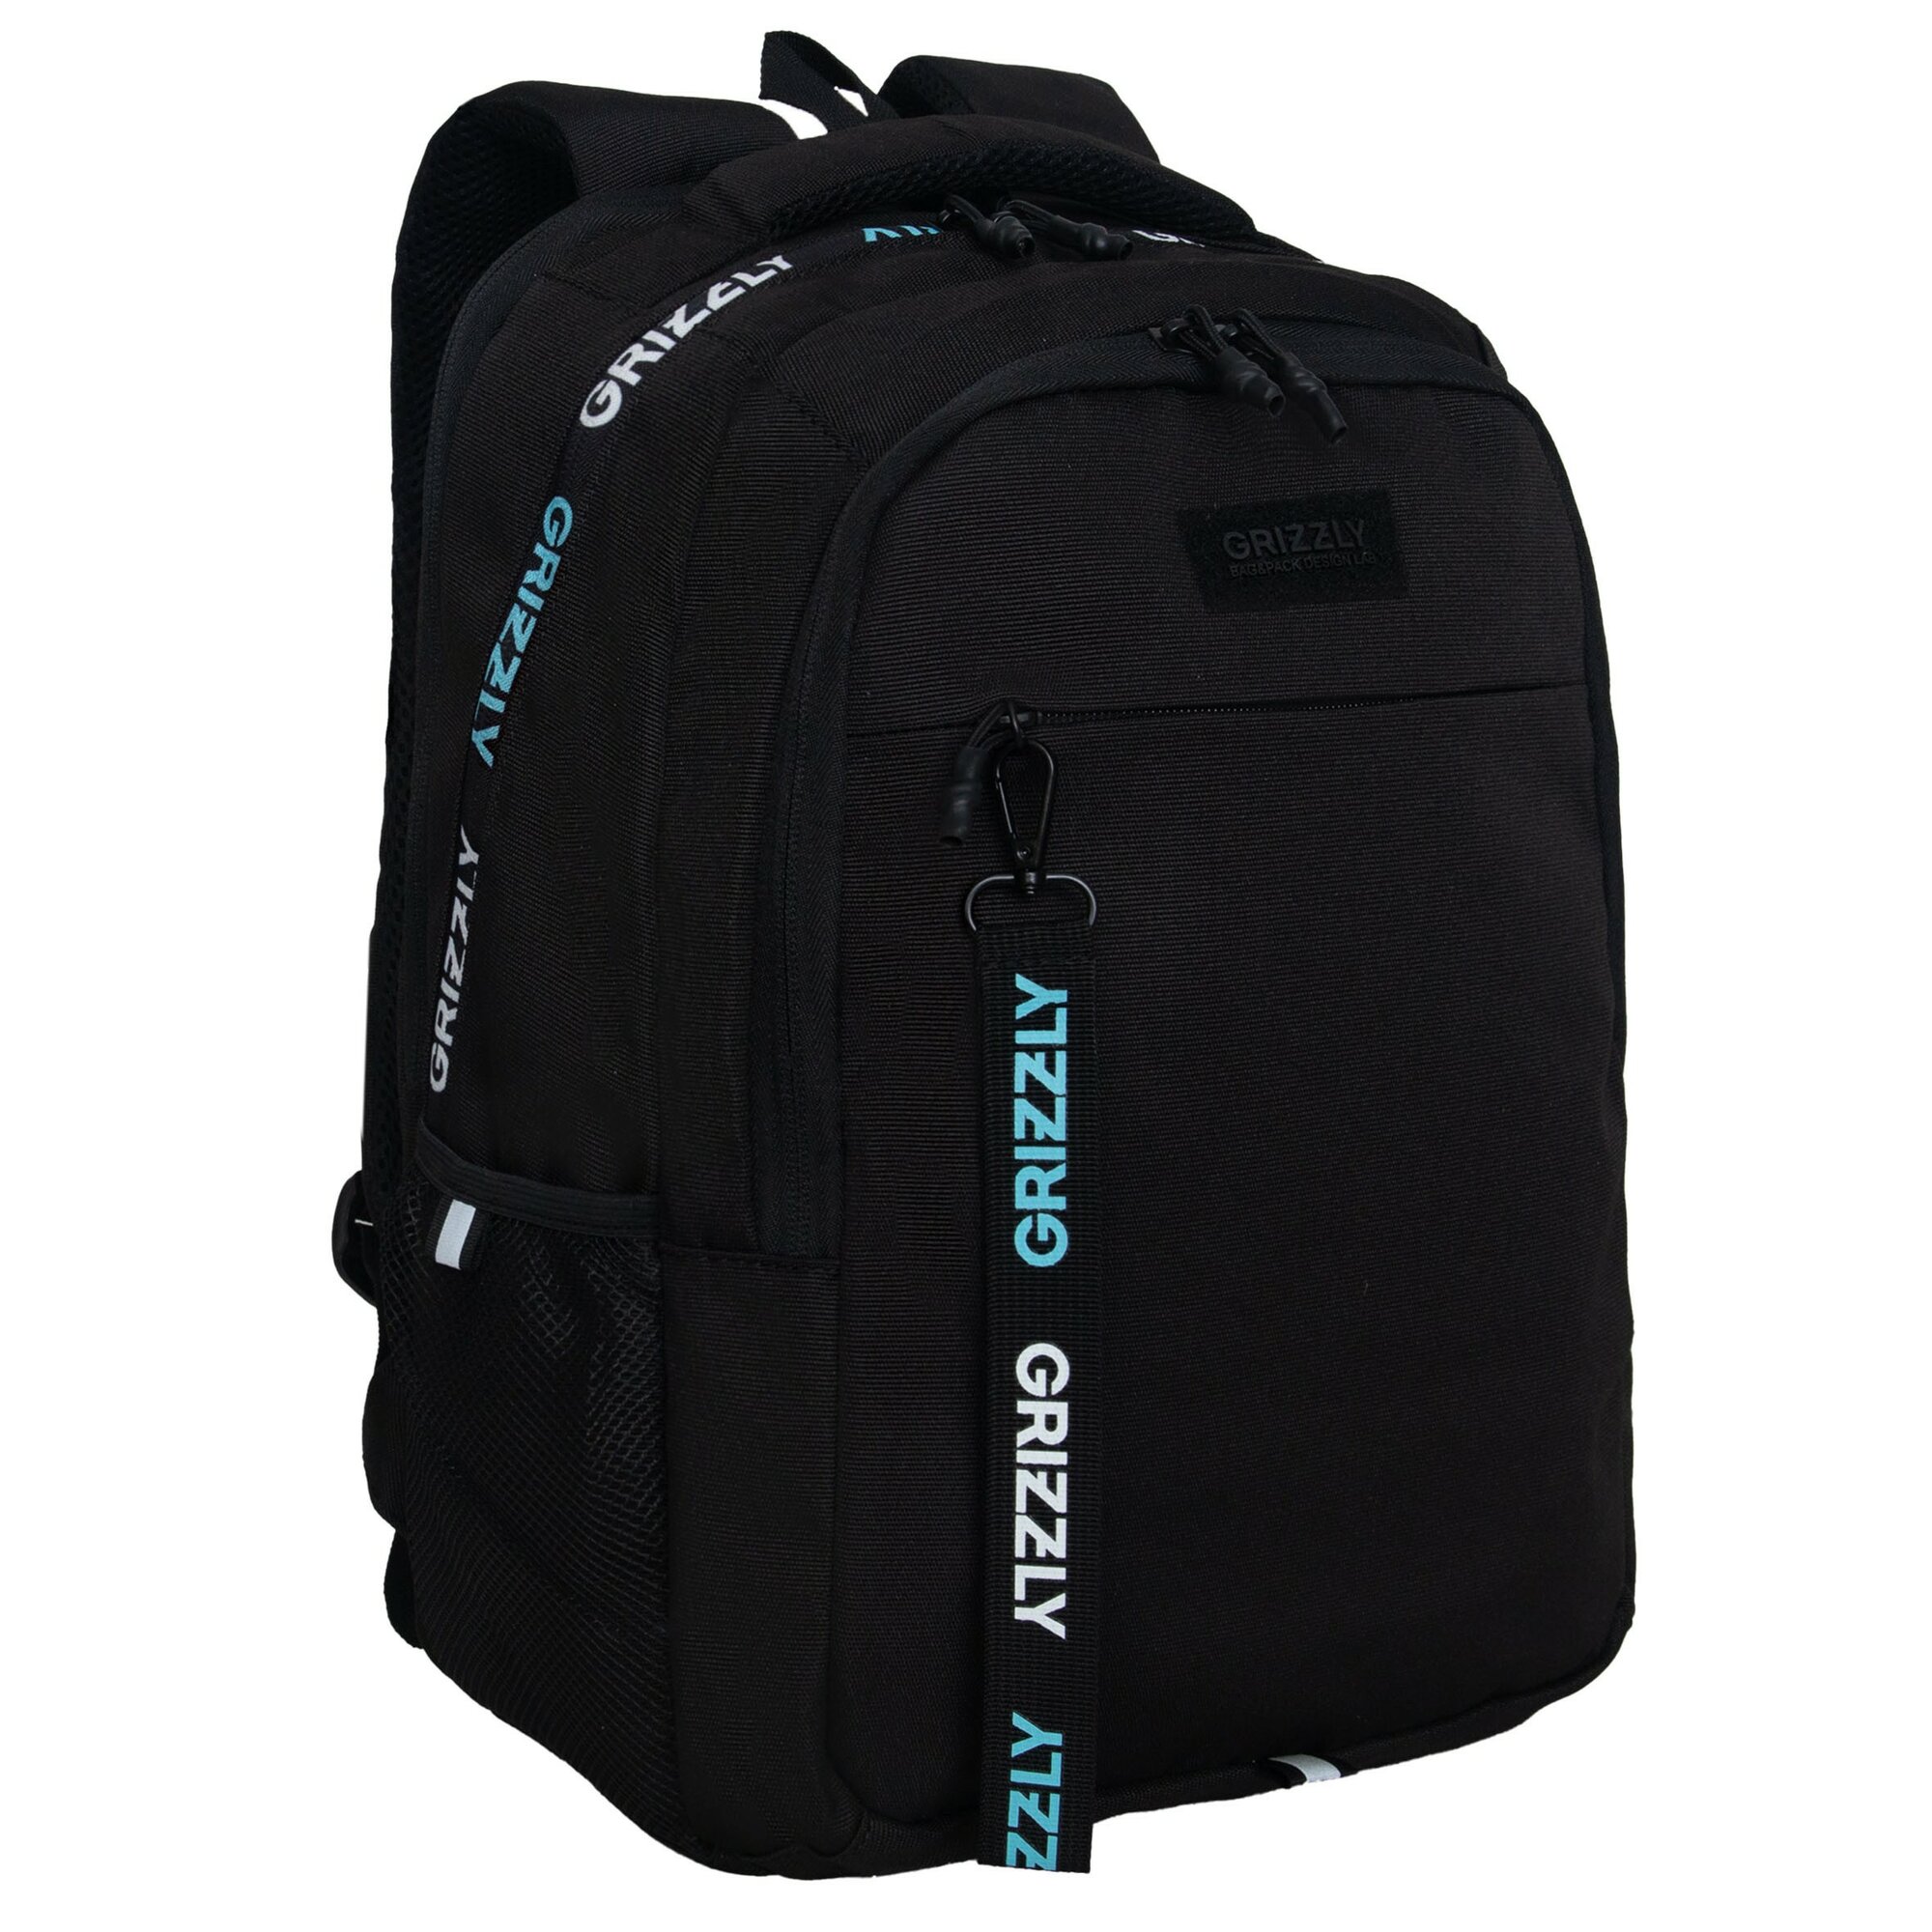 Рюкзак молодежный GRIZZLY с карманом для ноутбука 15", анатомической спинкой, для мальчика, мужской RU-432-3/3